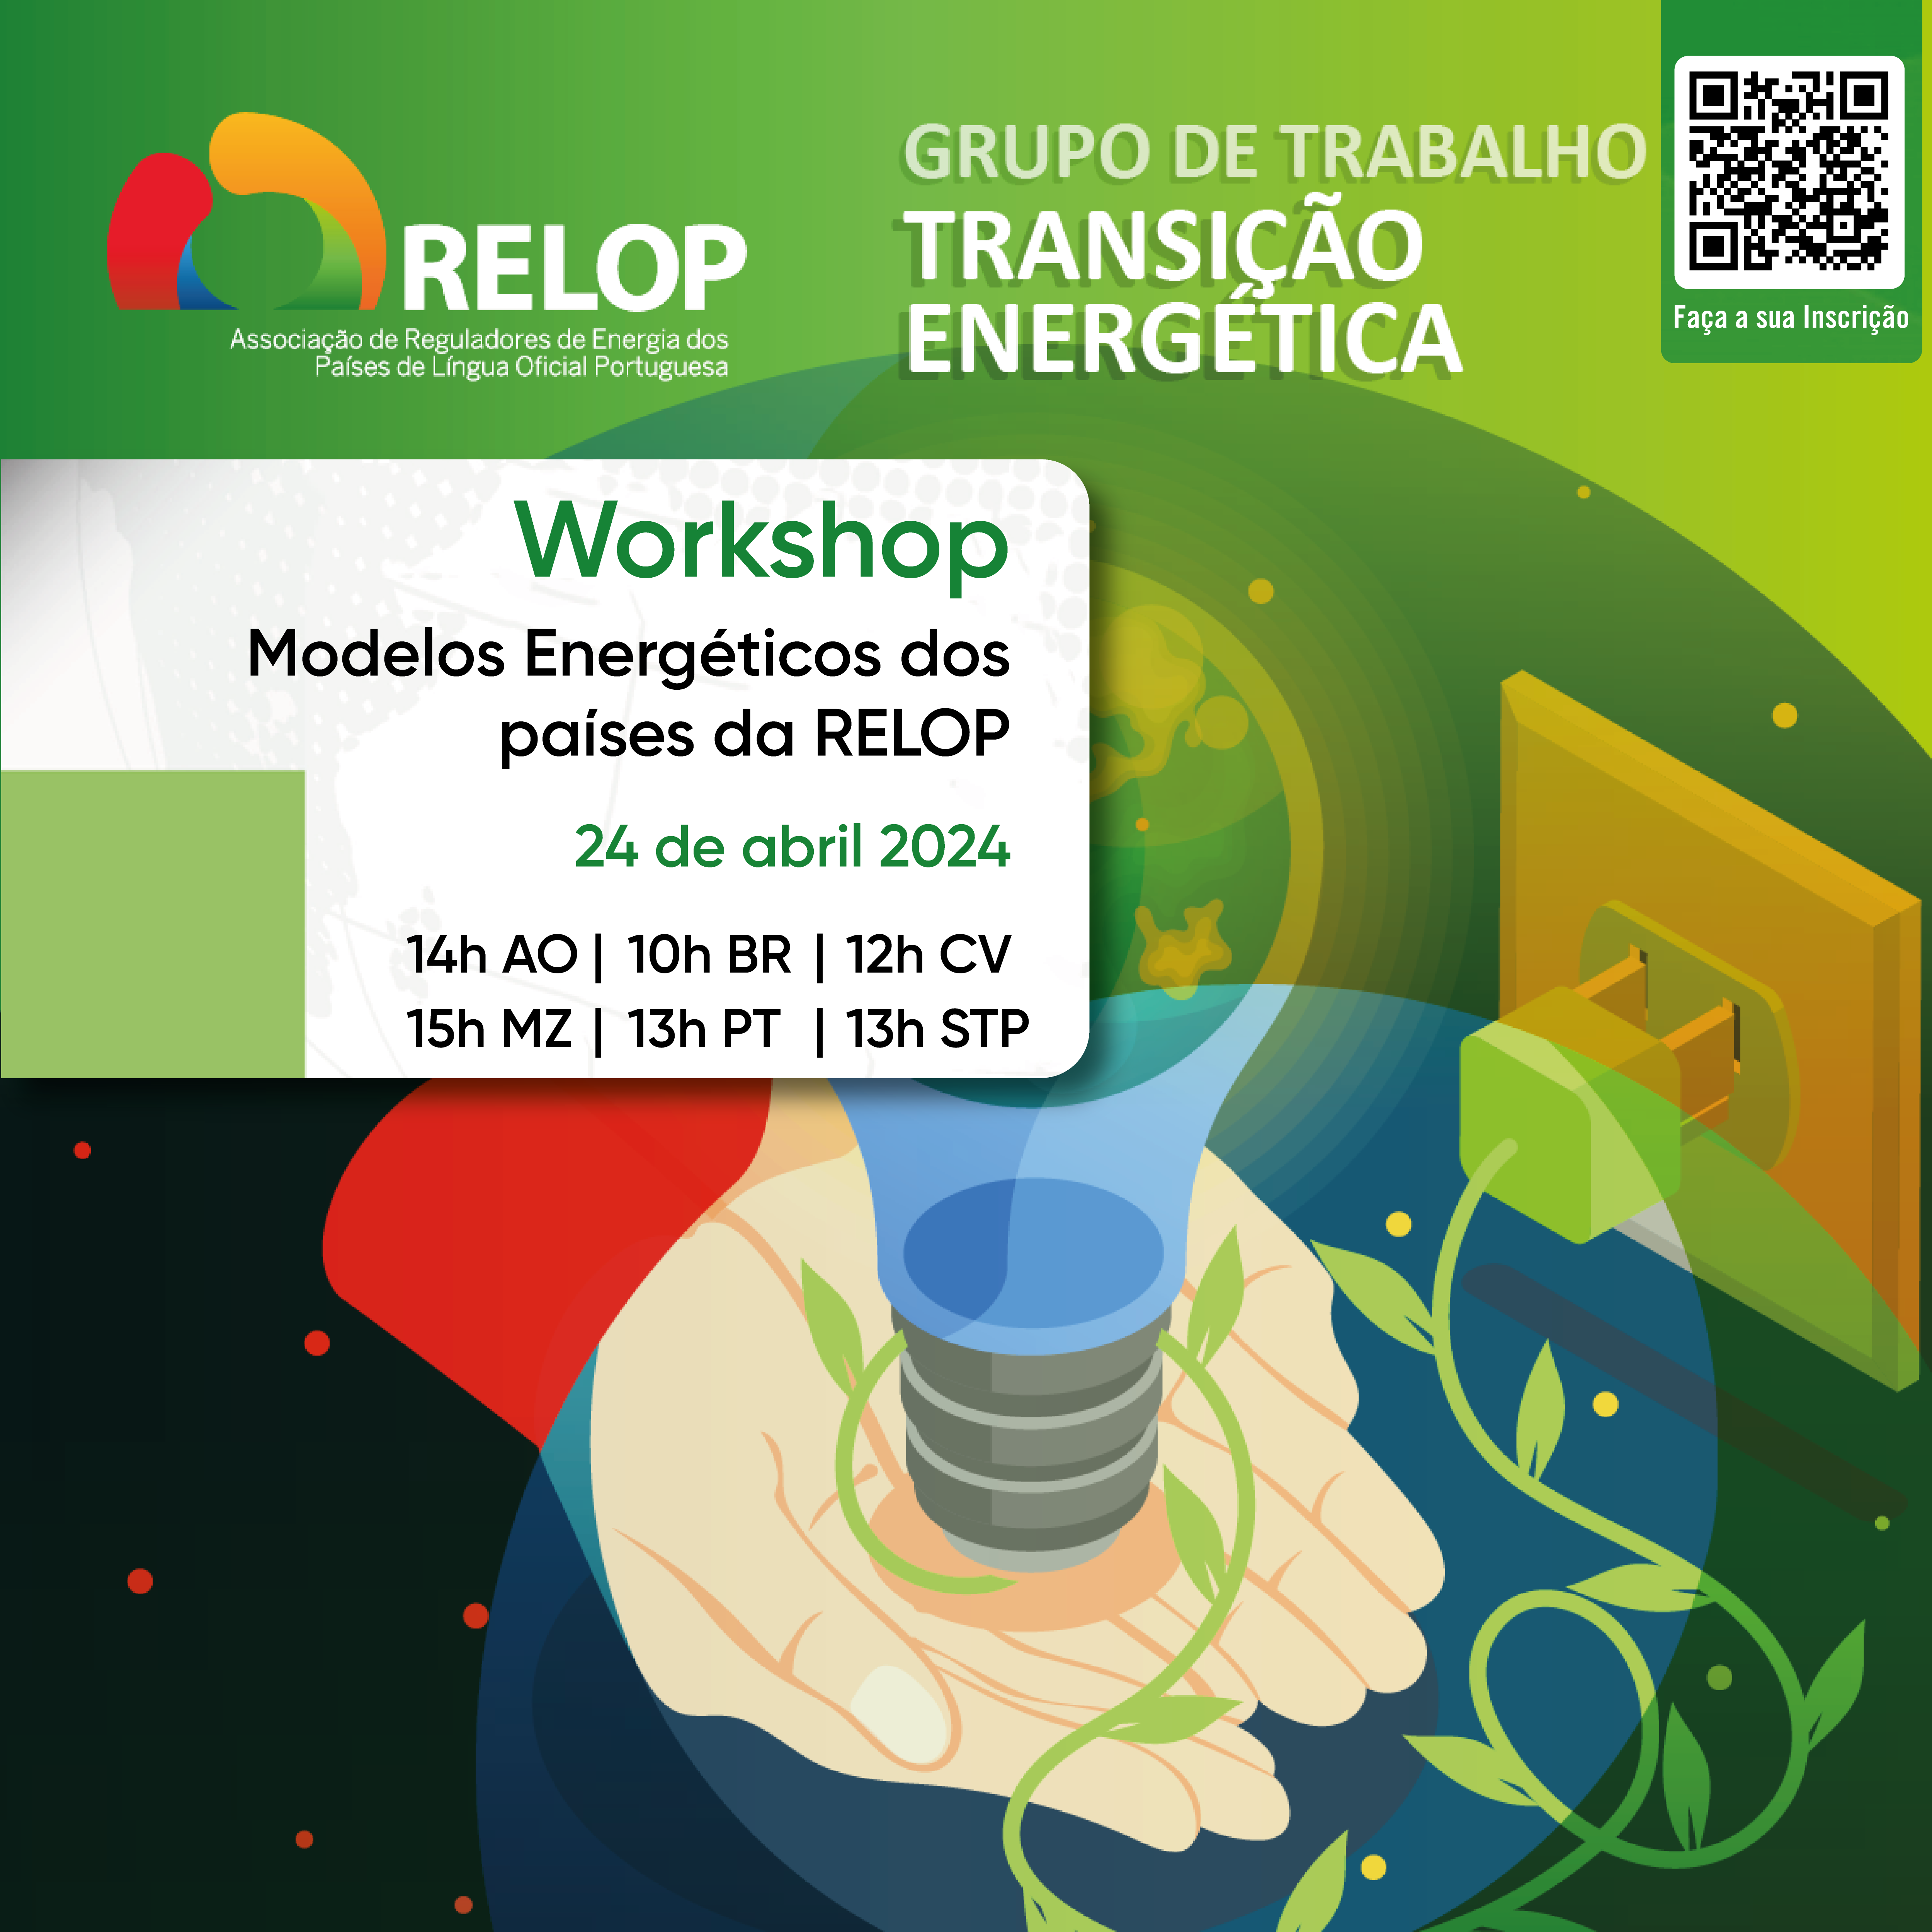 Workshop “Modelos Energéticos dos países da RELOP”